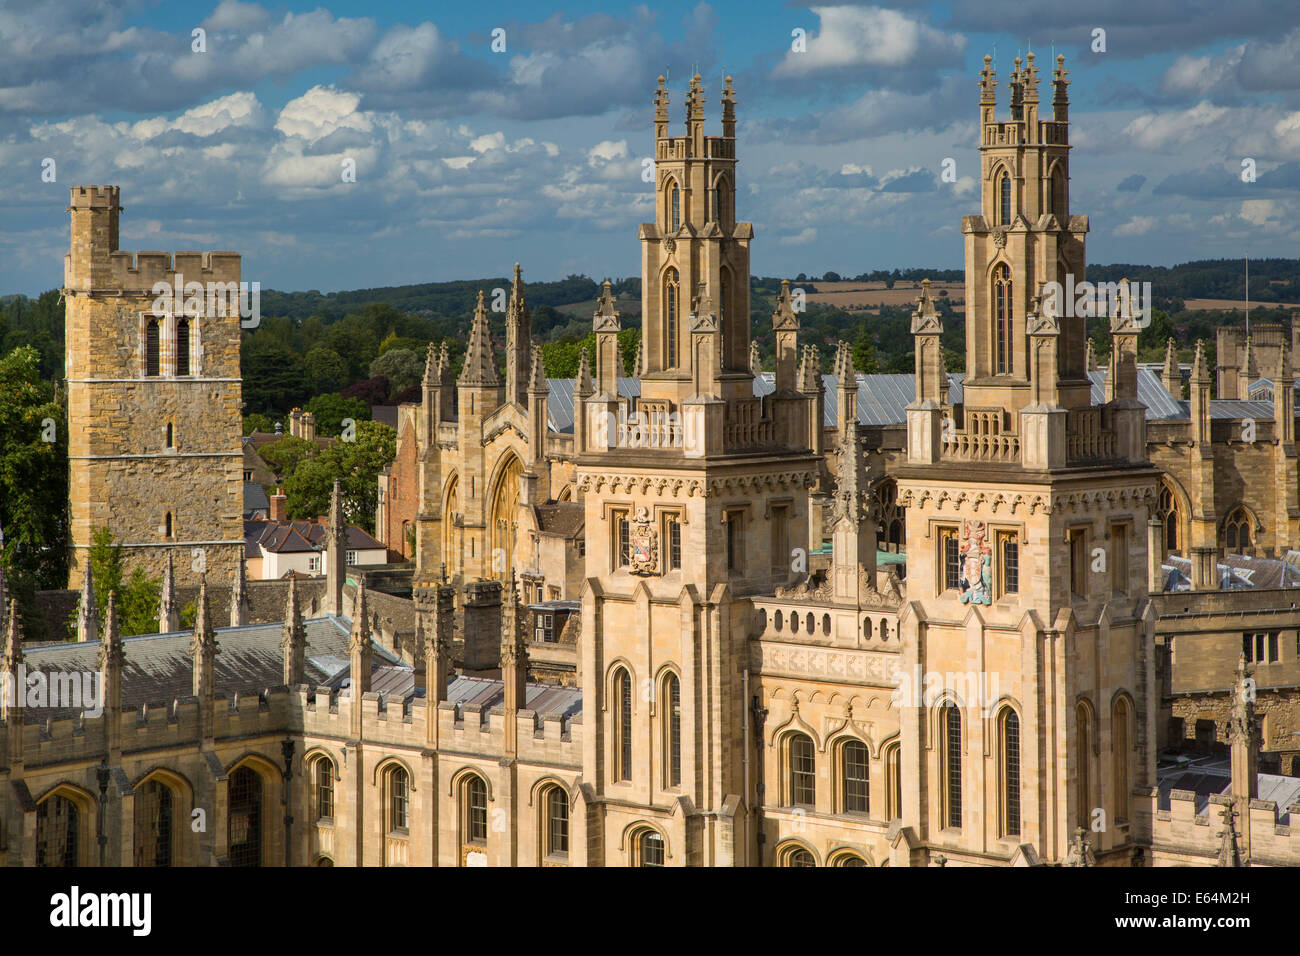 All Souls College et le nombre de spires de l'Université d'Oxford, Oxfordshire, Angleterre Banque D'Images